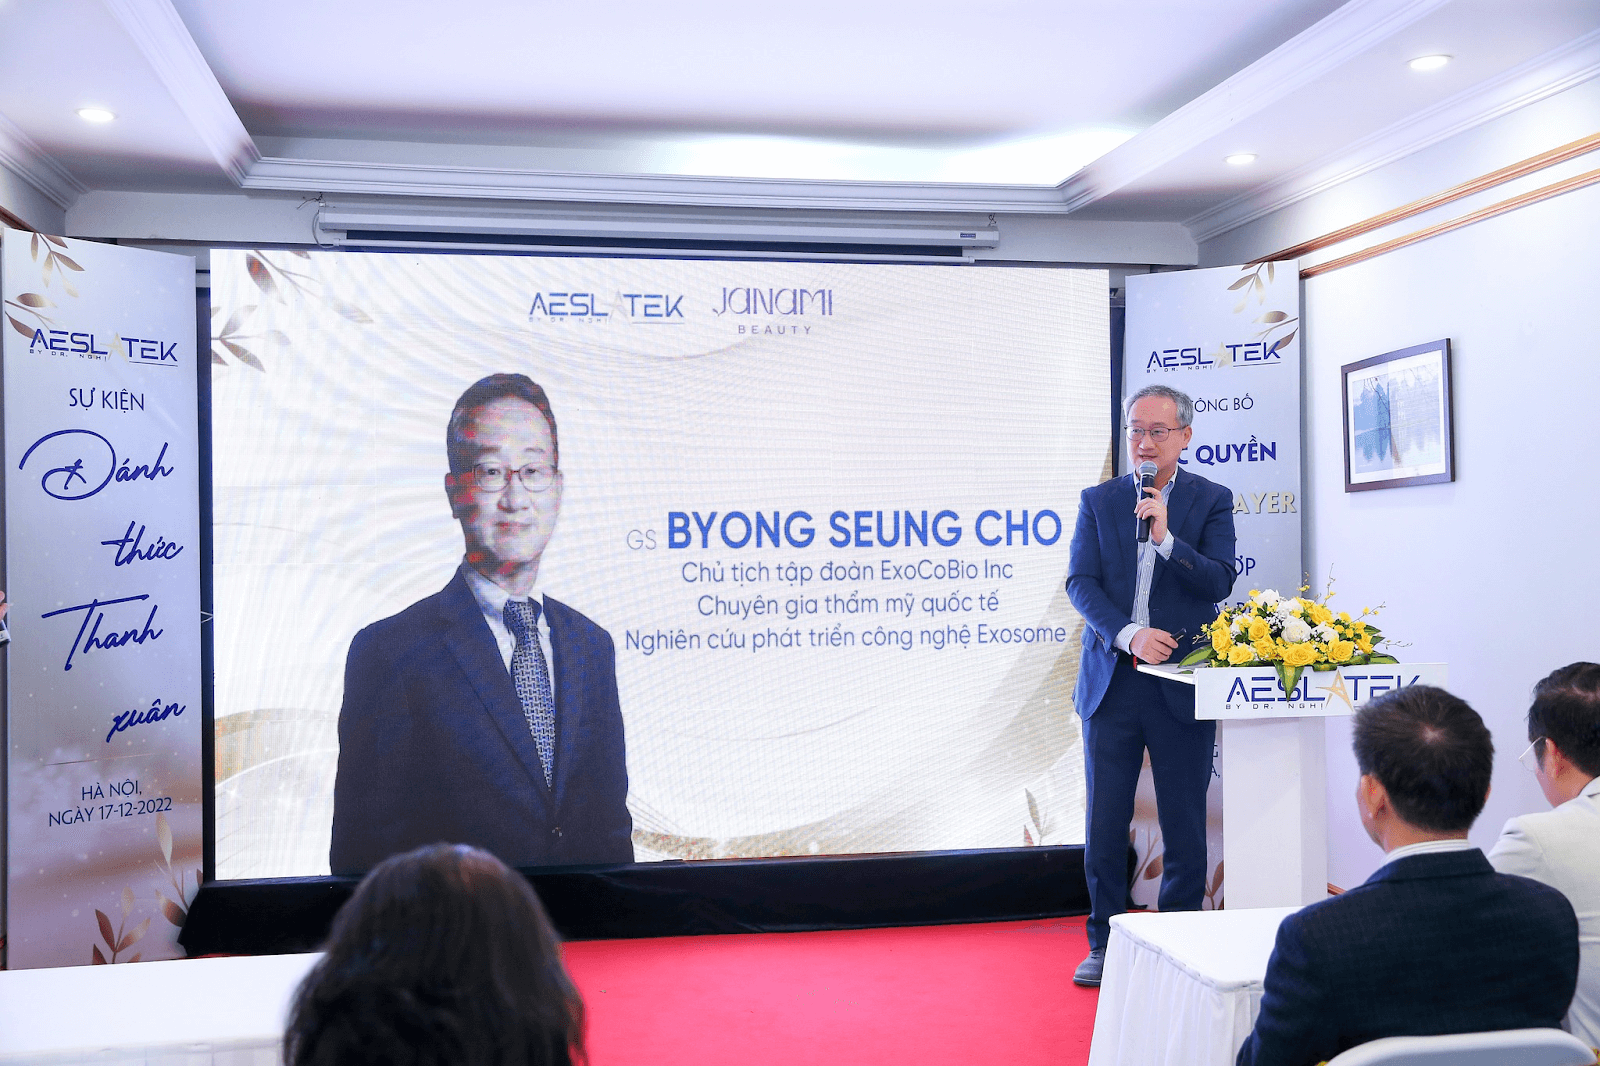 GS Byong Seung Cho chủ tịch ExoCobi chia sẻ tại sự kiện “Đánh thức thanh xuân”